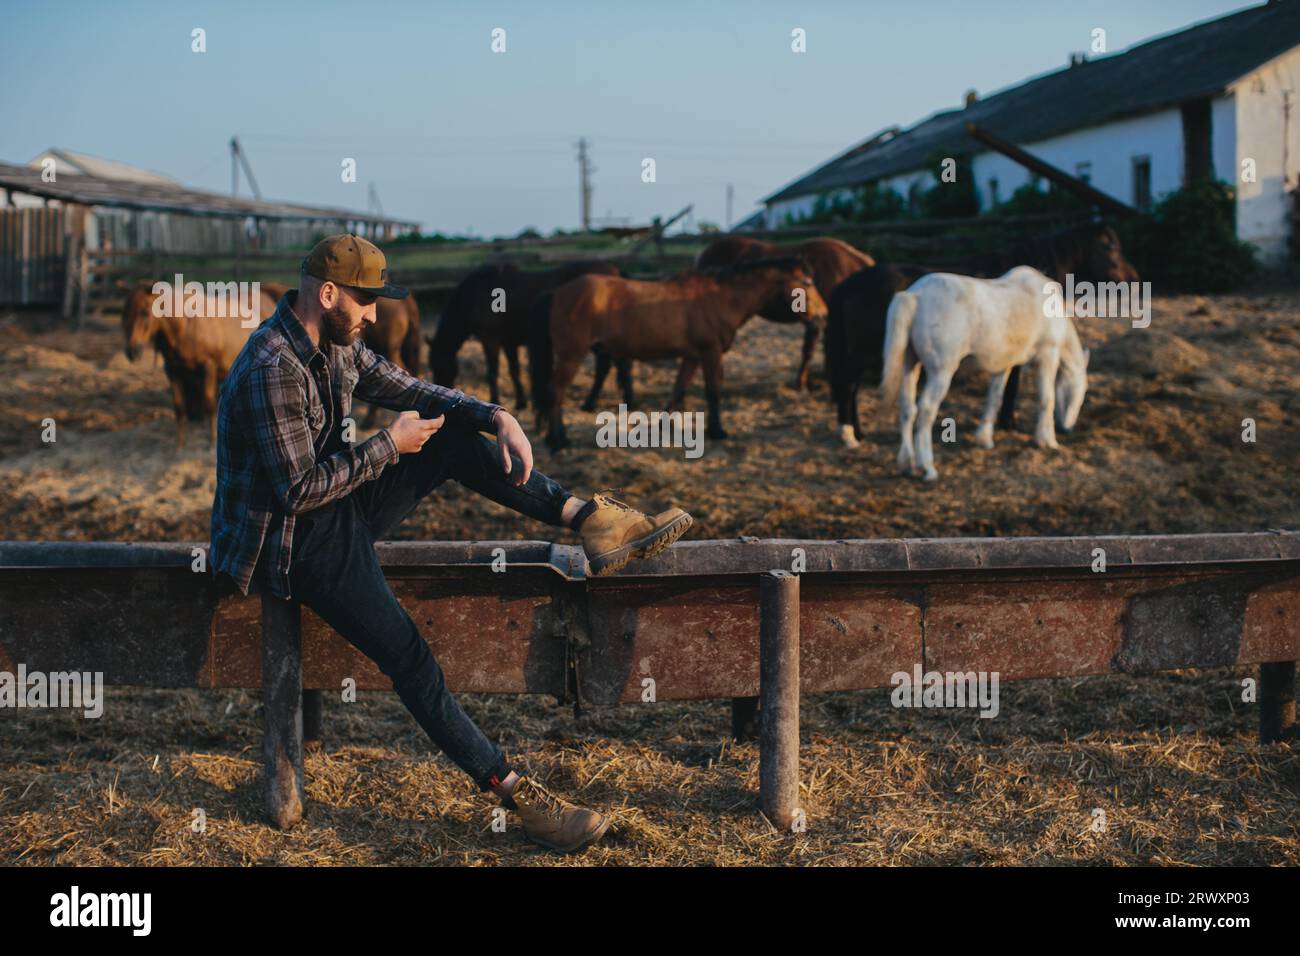 Un giovane con un telefono in mano sullo sfondo di un paddock con i cavalli. Un uomo riposa dopo una giornata di lavoro alla fattoria, al tramonto. Foto Stock